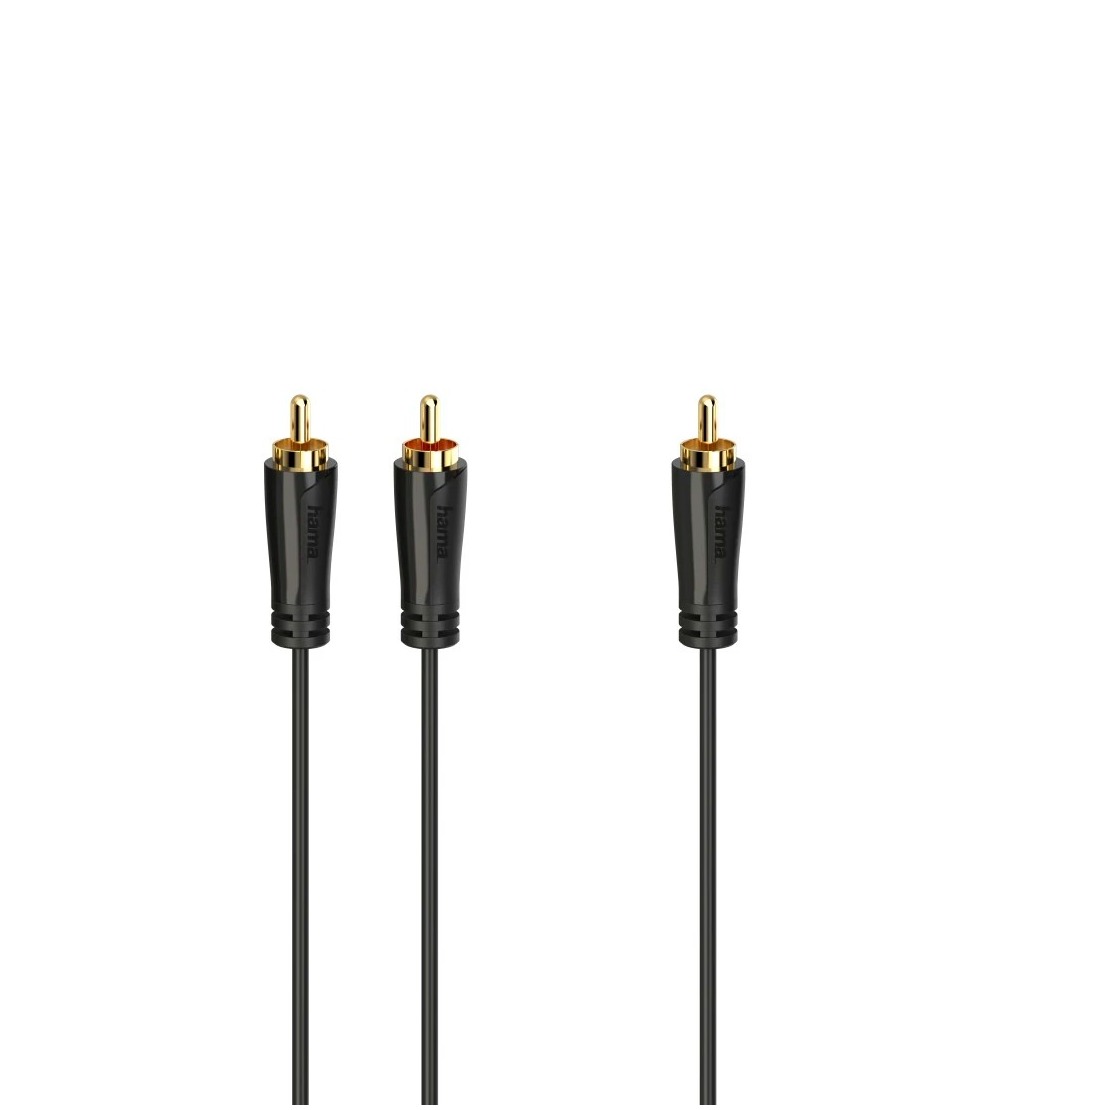 Hama Subwooferkabel, cinch-stekkers - 2 cinch-stekkers, verguld, 5,0 m Luidspreker kabel